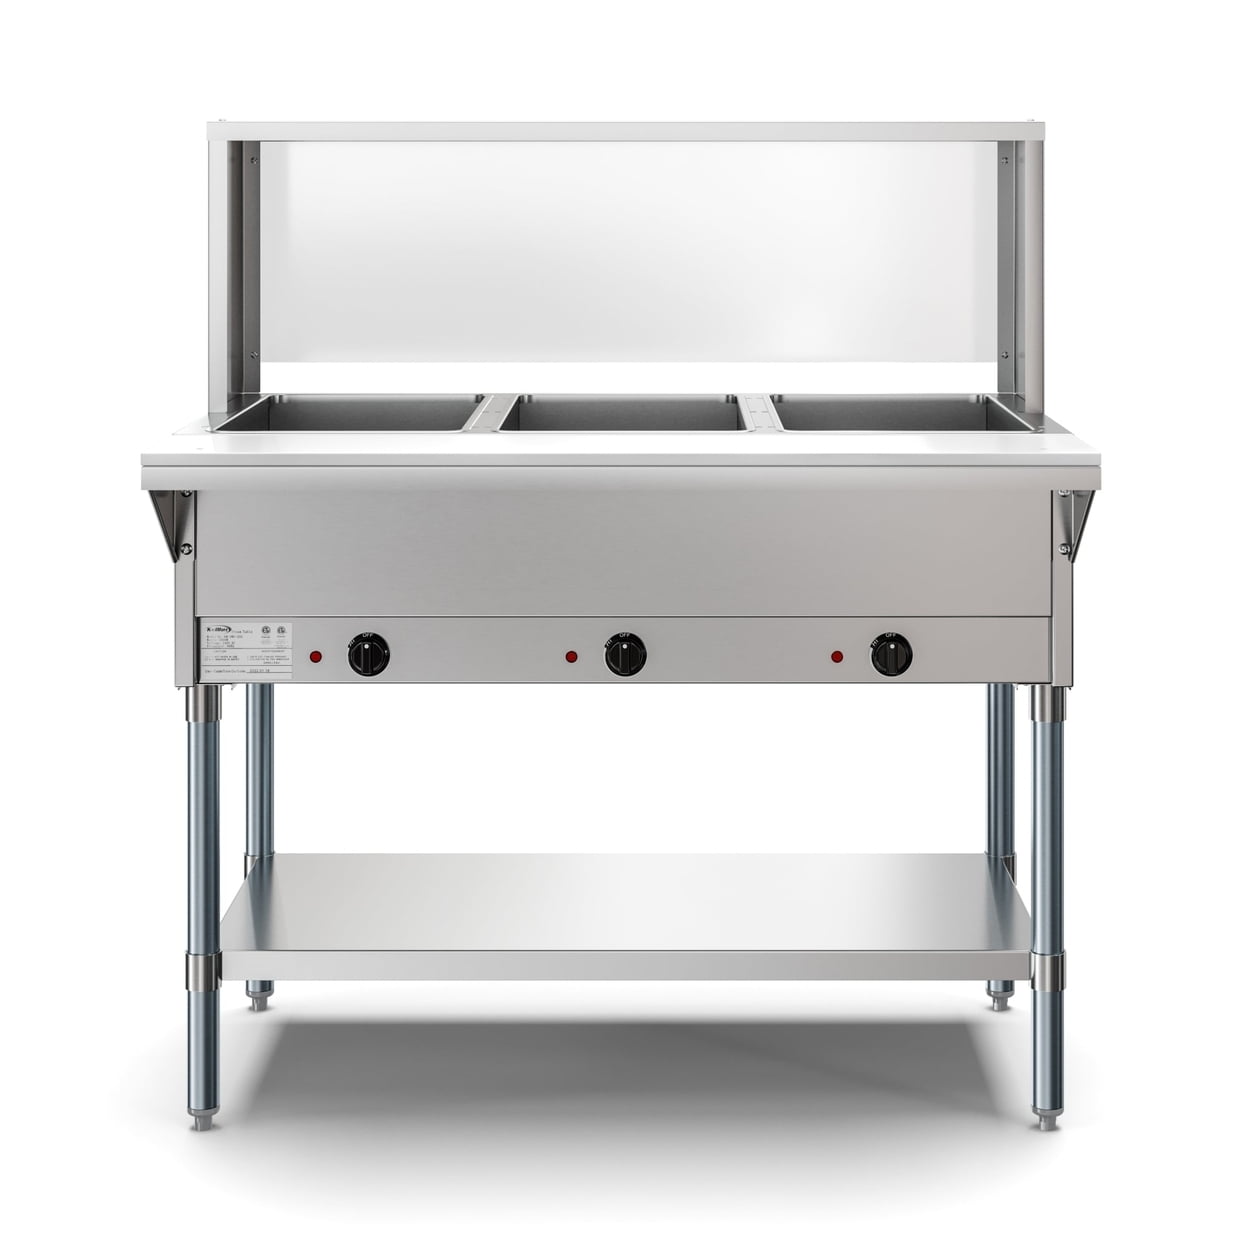 SEPG Smart Full-size Steam Table Pans - Baking, Steaming, EGS600248, EGS  600248 - Office Supply Hut